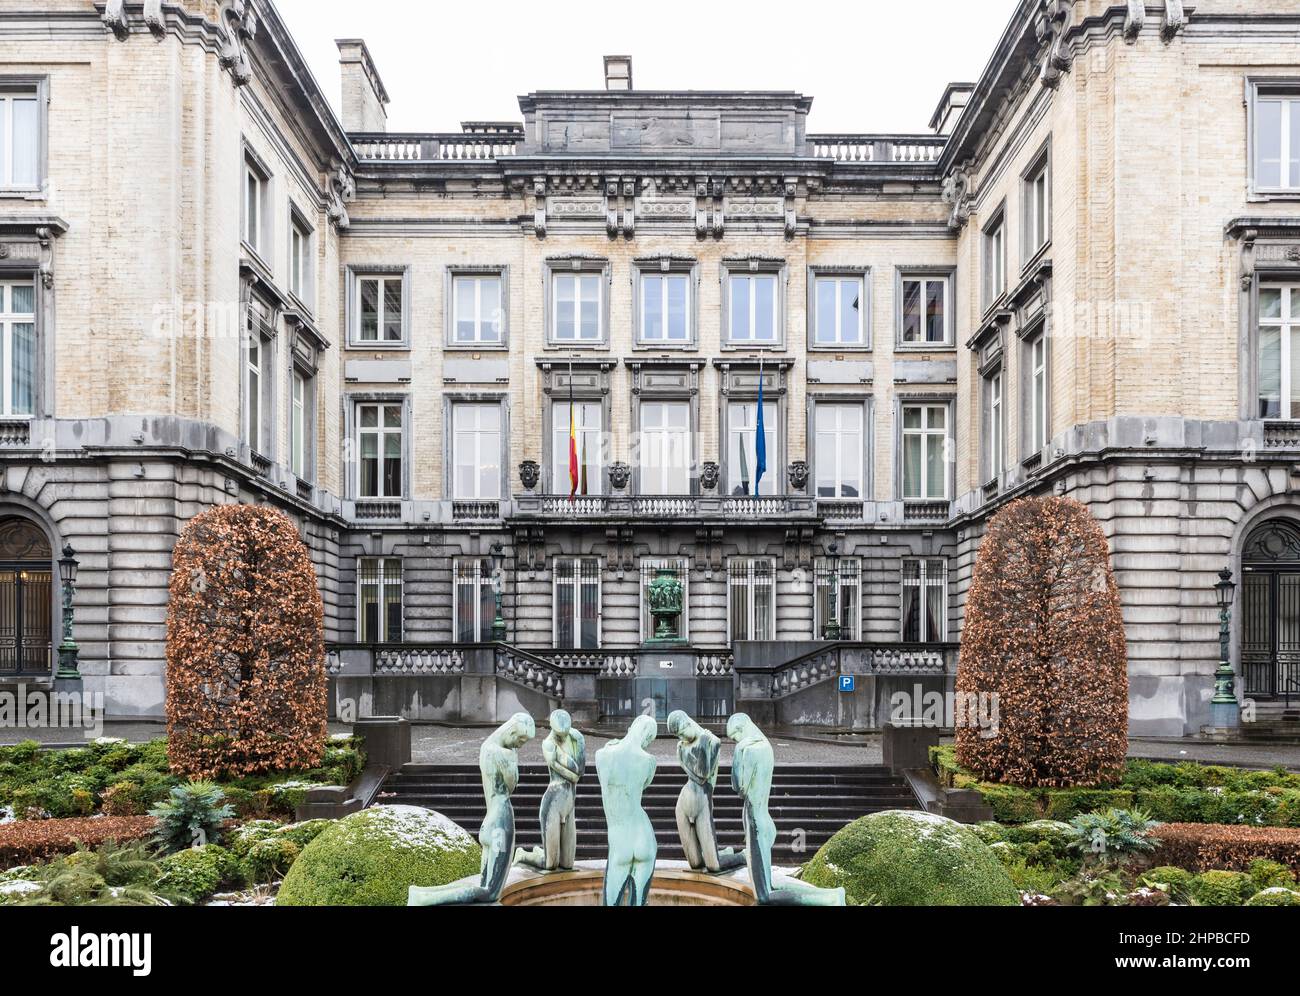 Bruxelles, Belgique - 02 01 2019 : façade de l'entrée des visiteurs du Parlement fédéral belge Banque D'Images